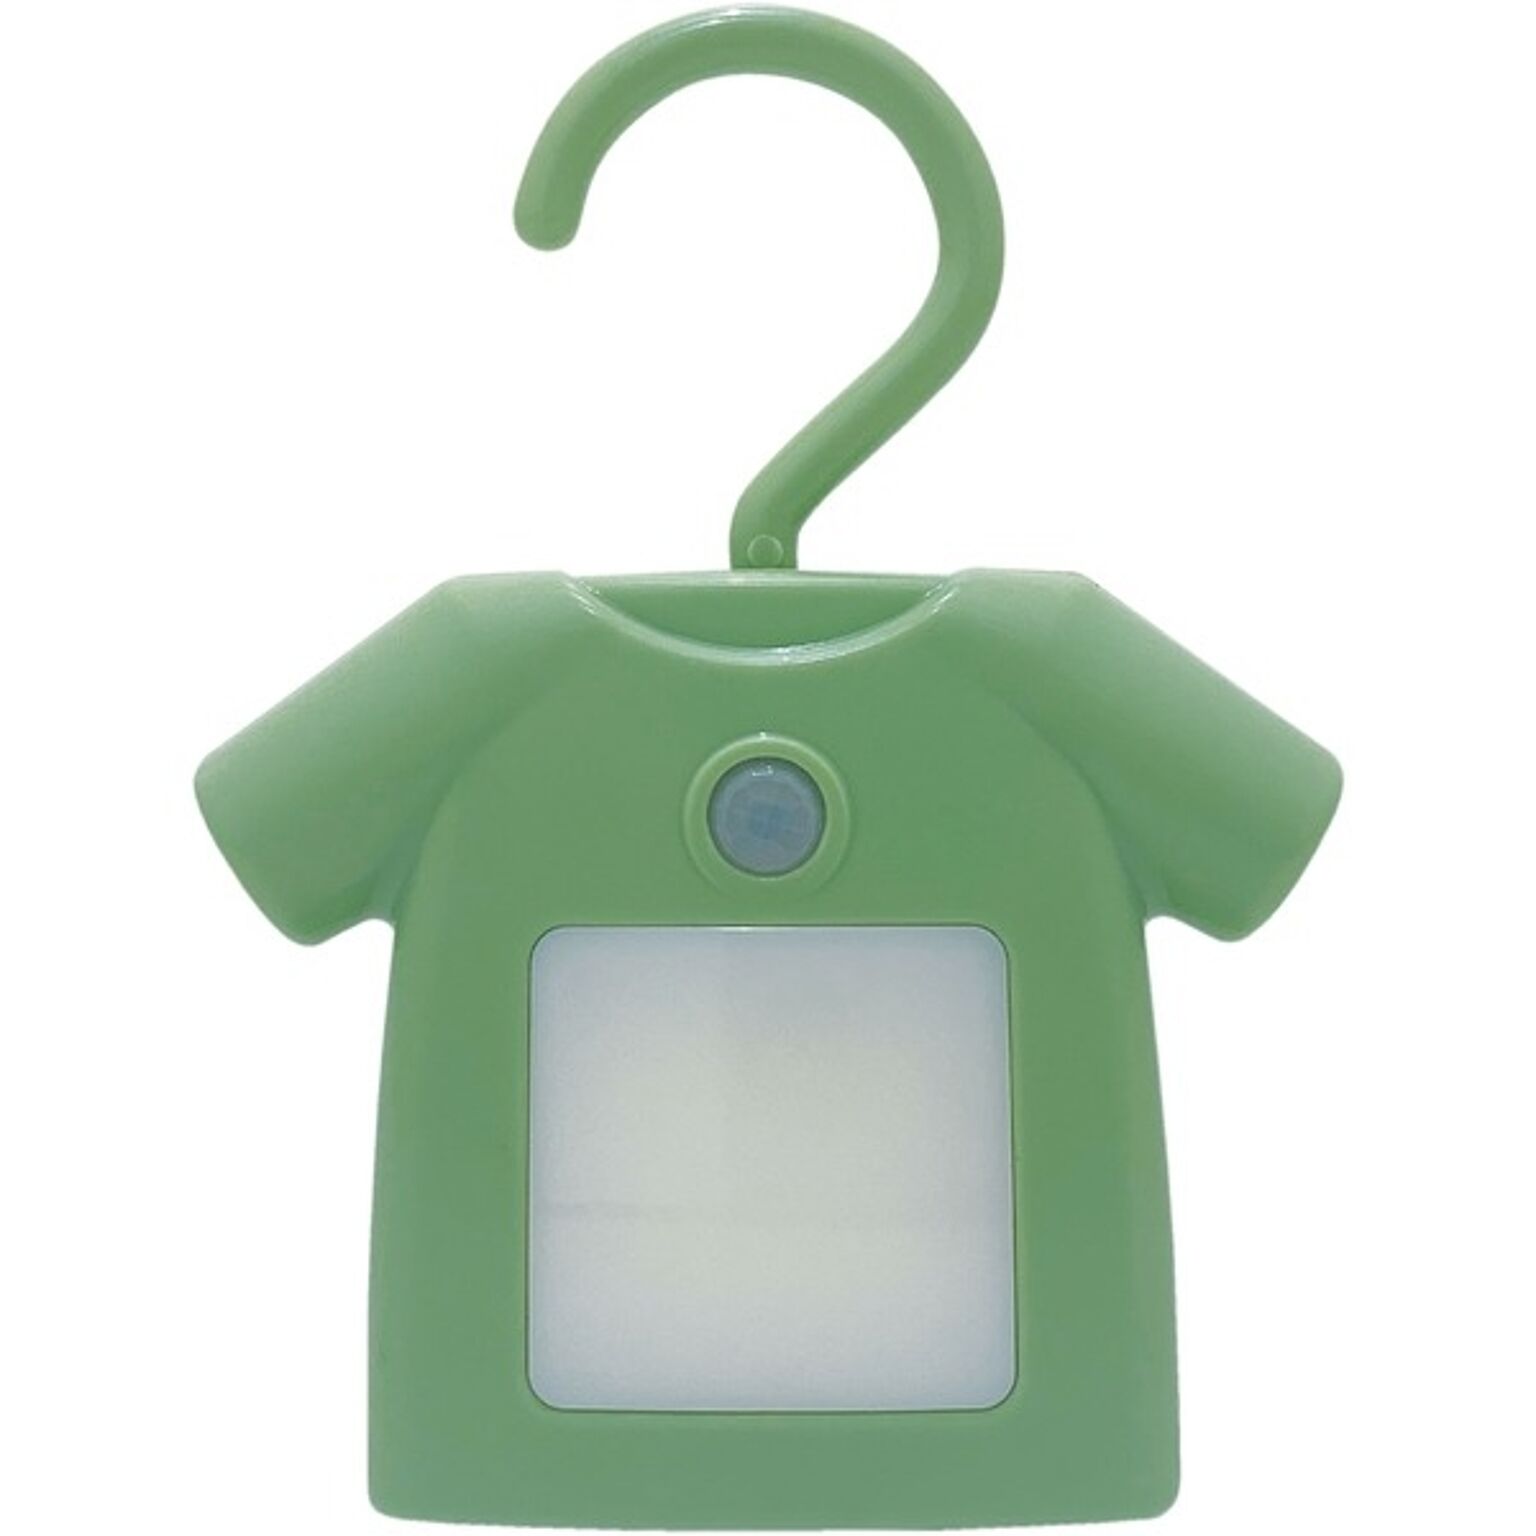 人感センサー付きクローゼットライト T-Shirt グリーン